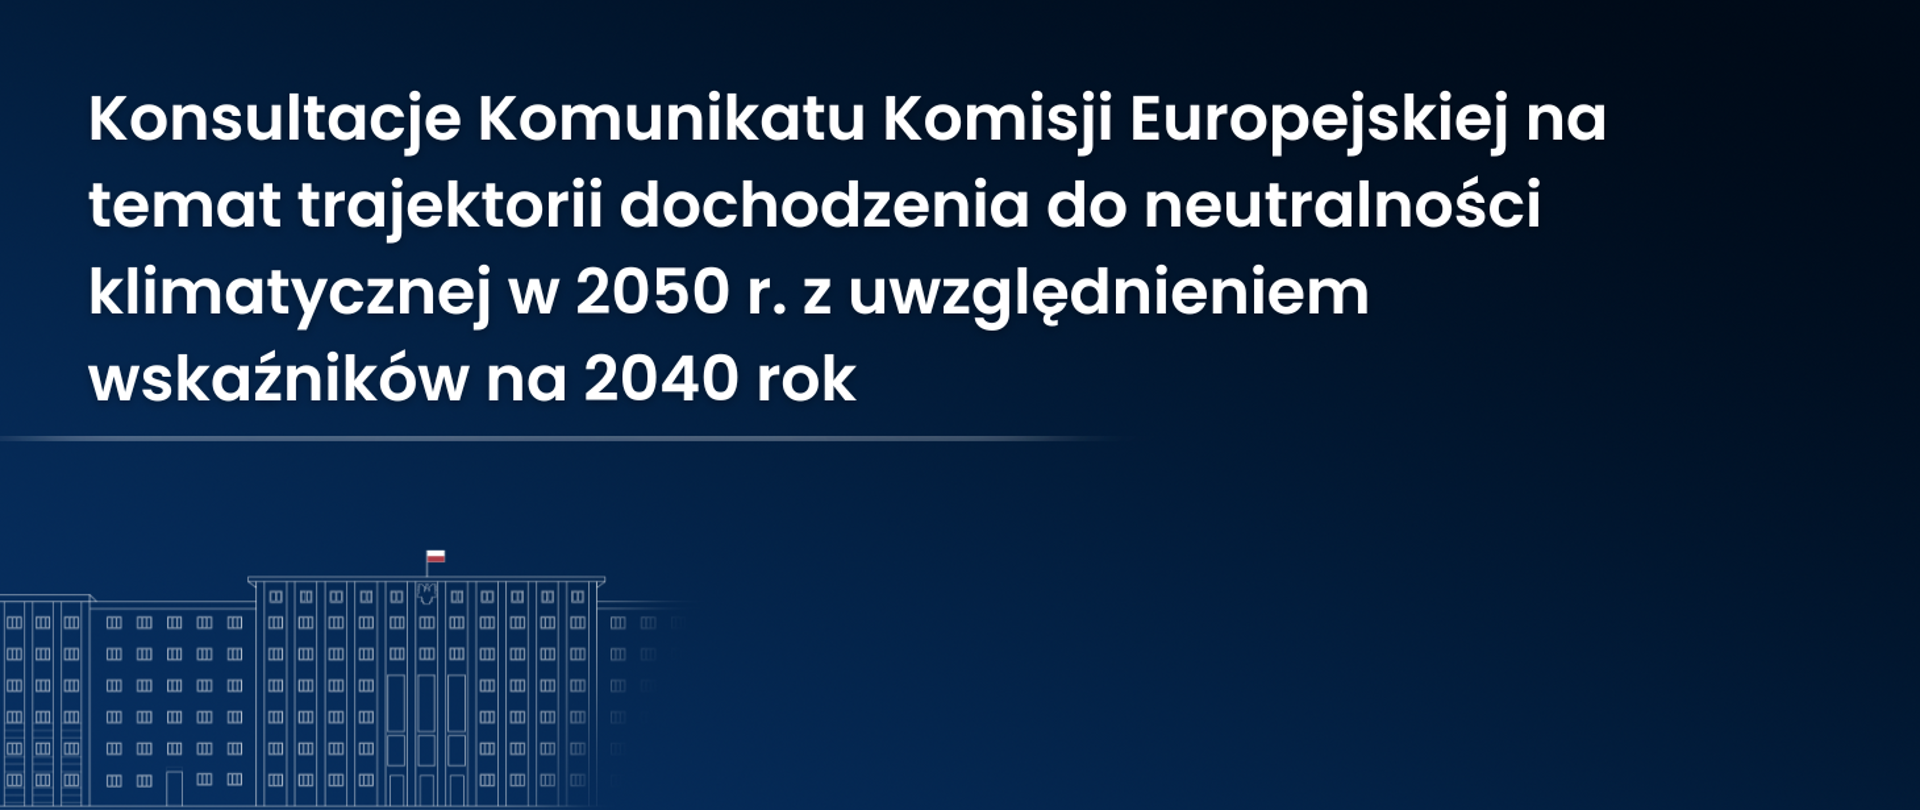 Zdjęcie do artykułu Konsultacje Komunikatu Komisji Europejskiej na temat trajektorii dochodzenia do neutralności klimatycznej w 2050 r. z uwzględnieniem wskaźników na 2040 rok